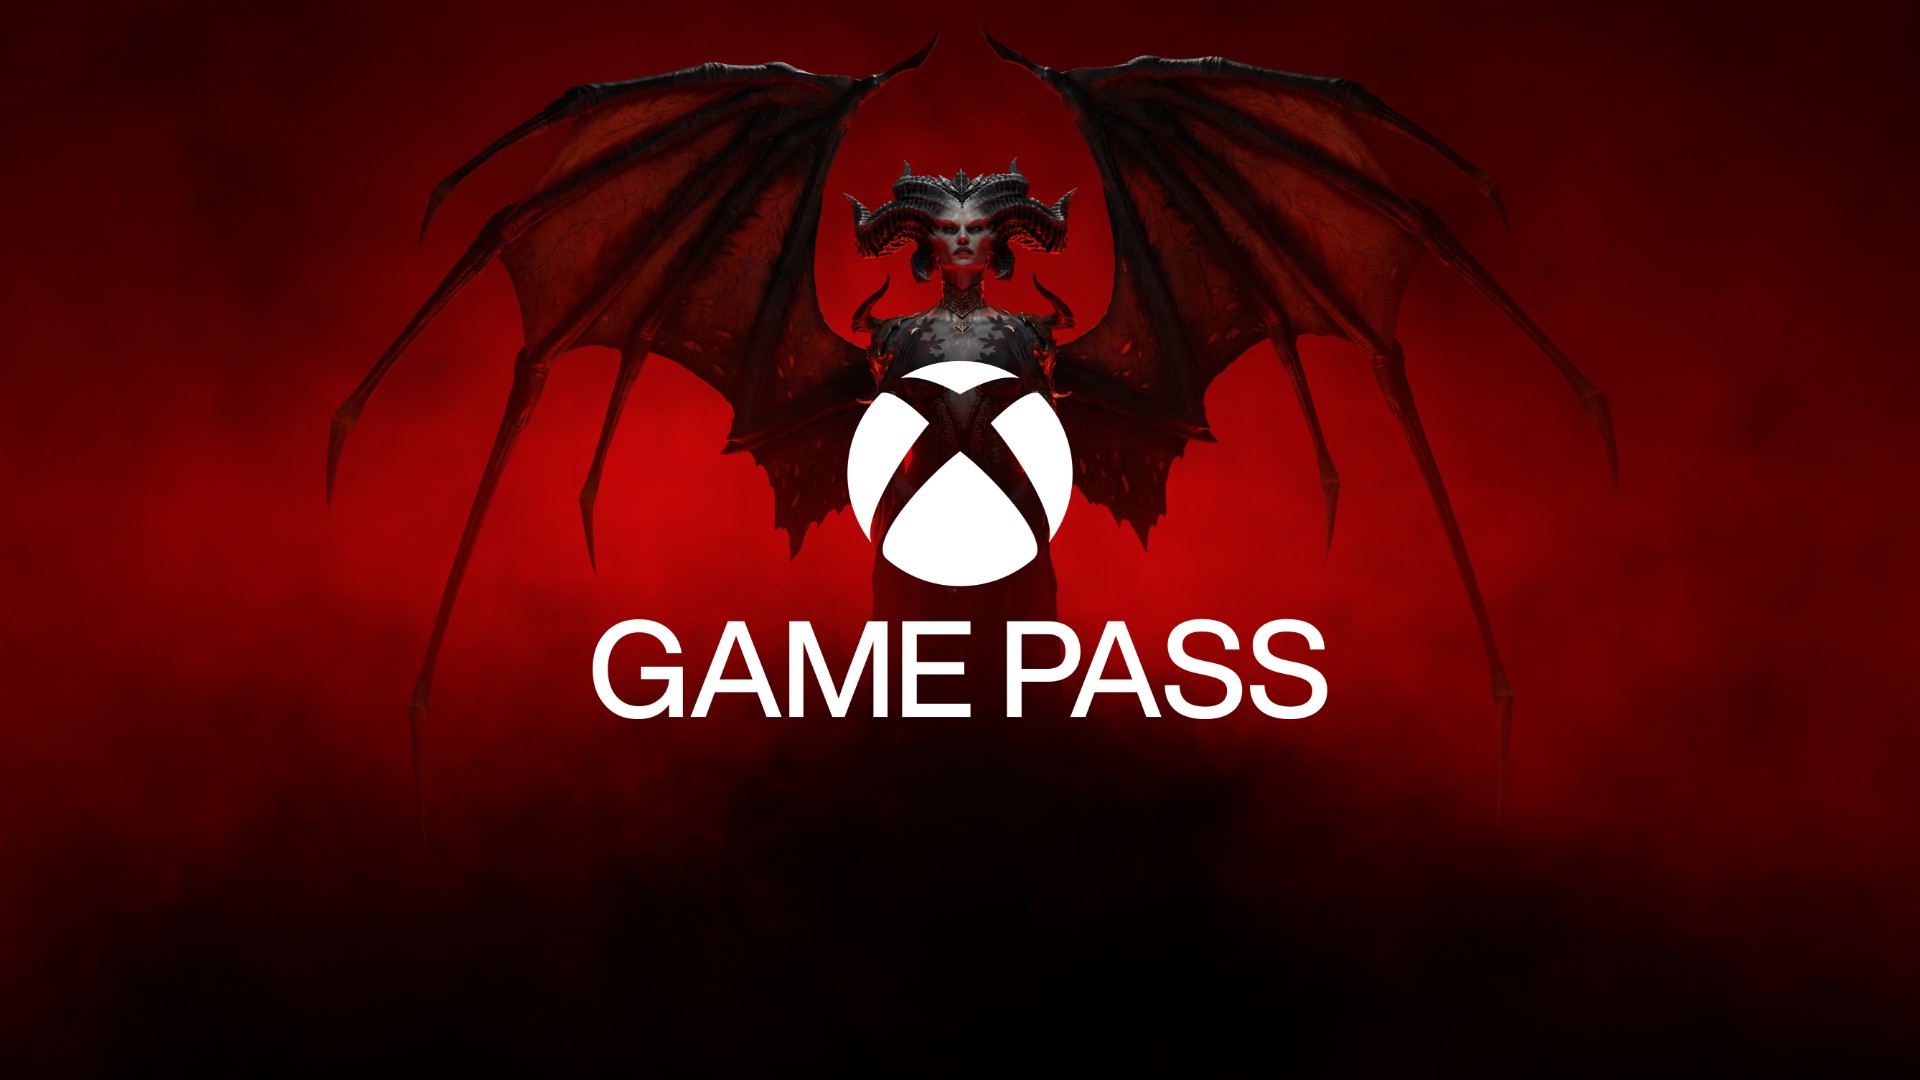 Visage, Back 4 Blood e mais jogos são anunciados para Xbox Game Pass